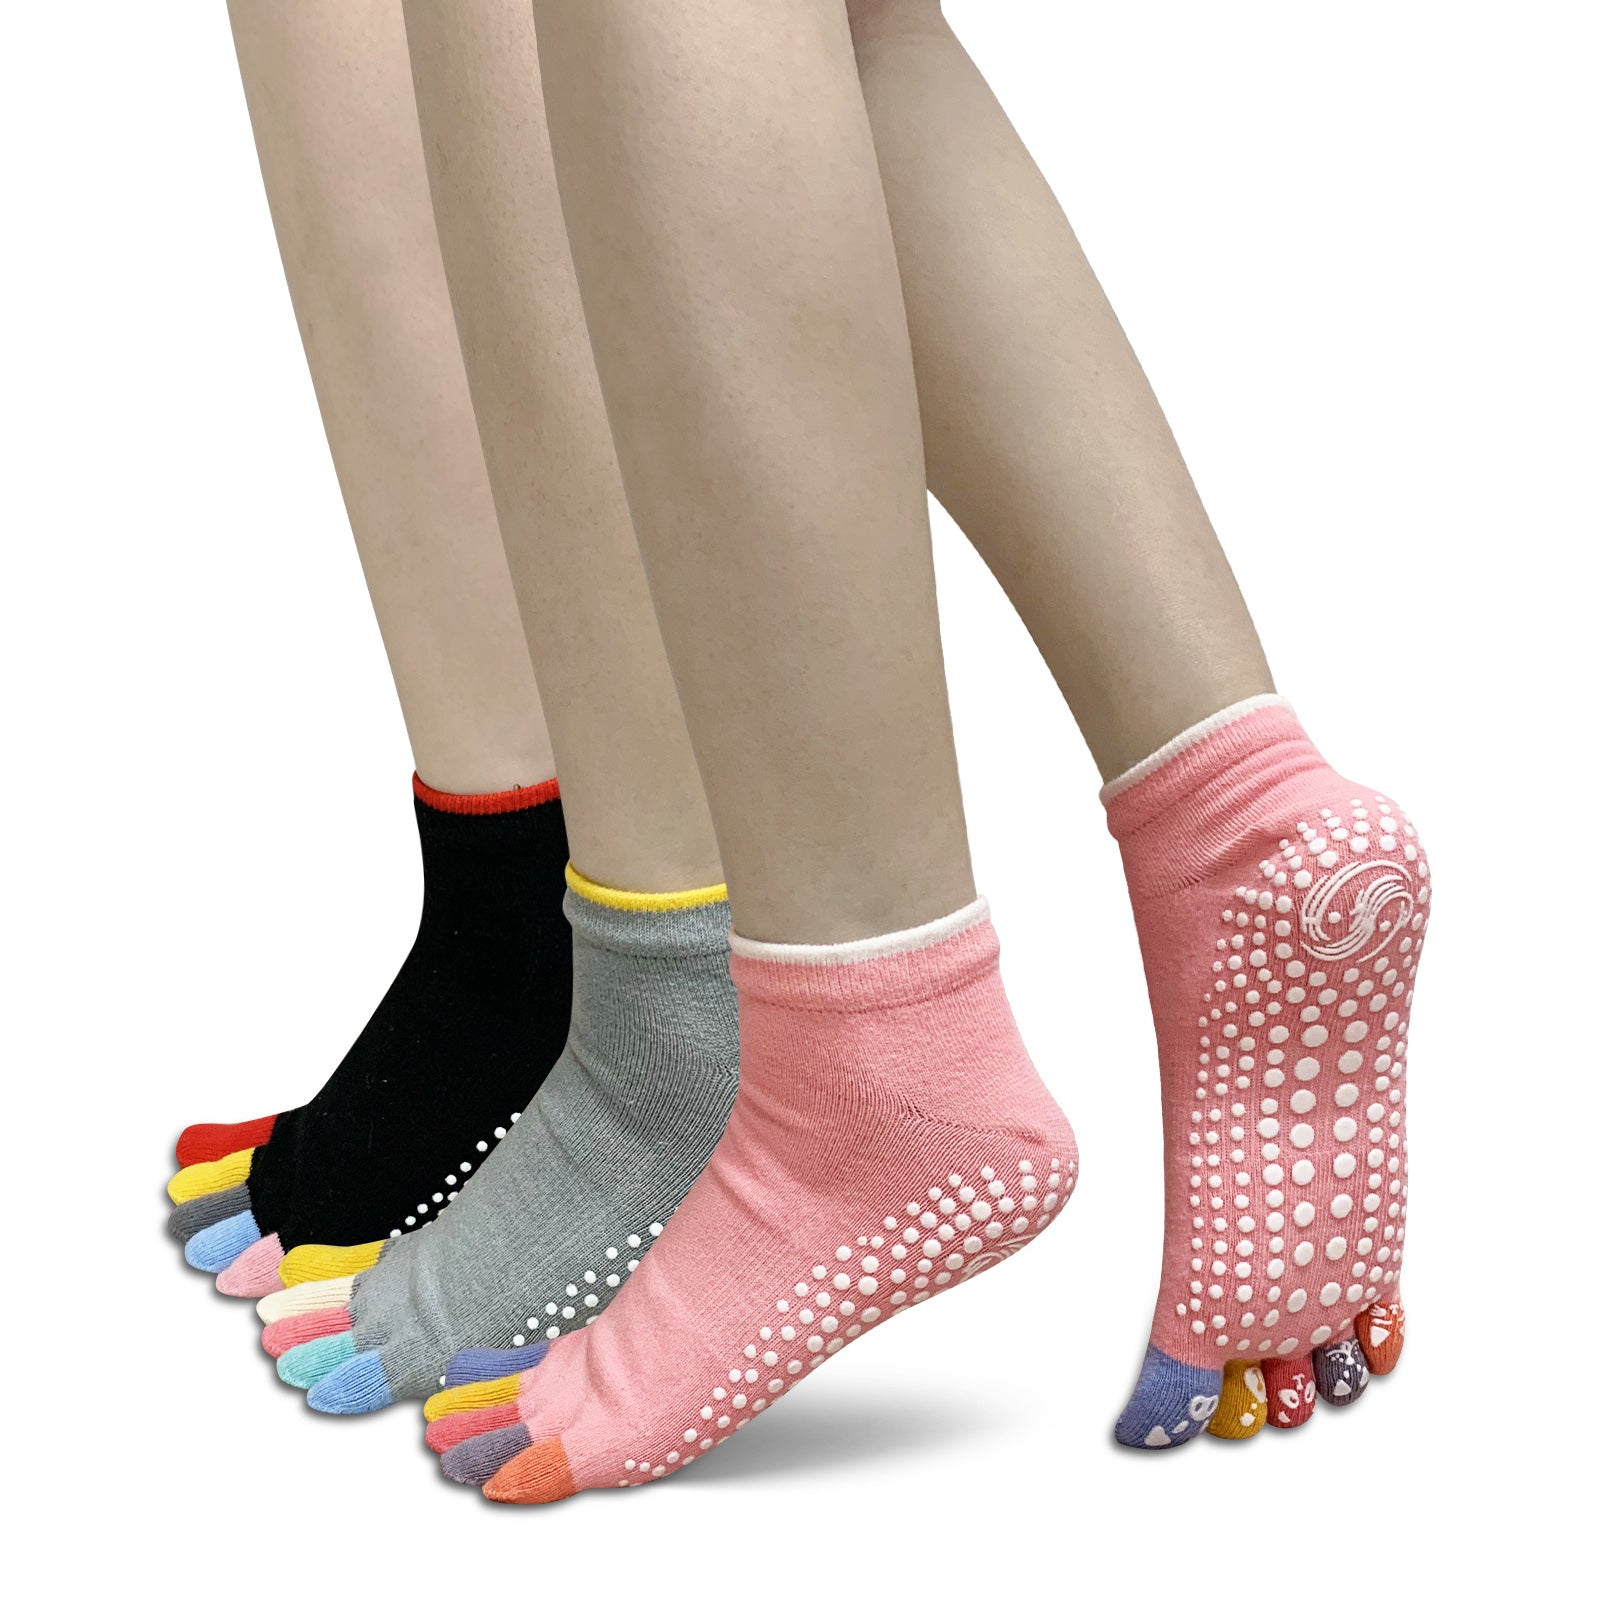 Artfasion 3 Pairs Pilates Socks with Grips for Women, Yoga Socks Non Slip Toe  Socks for Ballet Barre Home Hospital at  Women's Clothing store